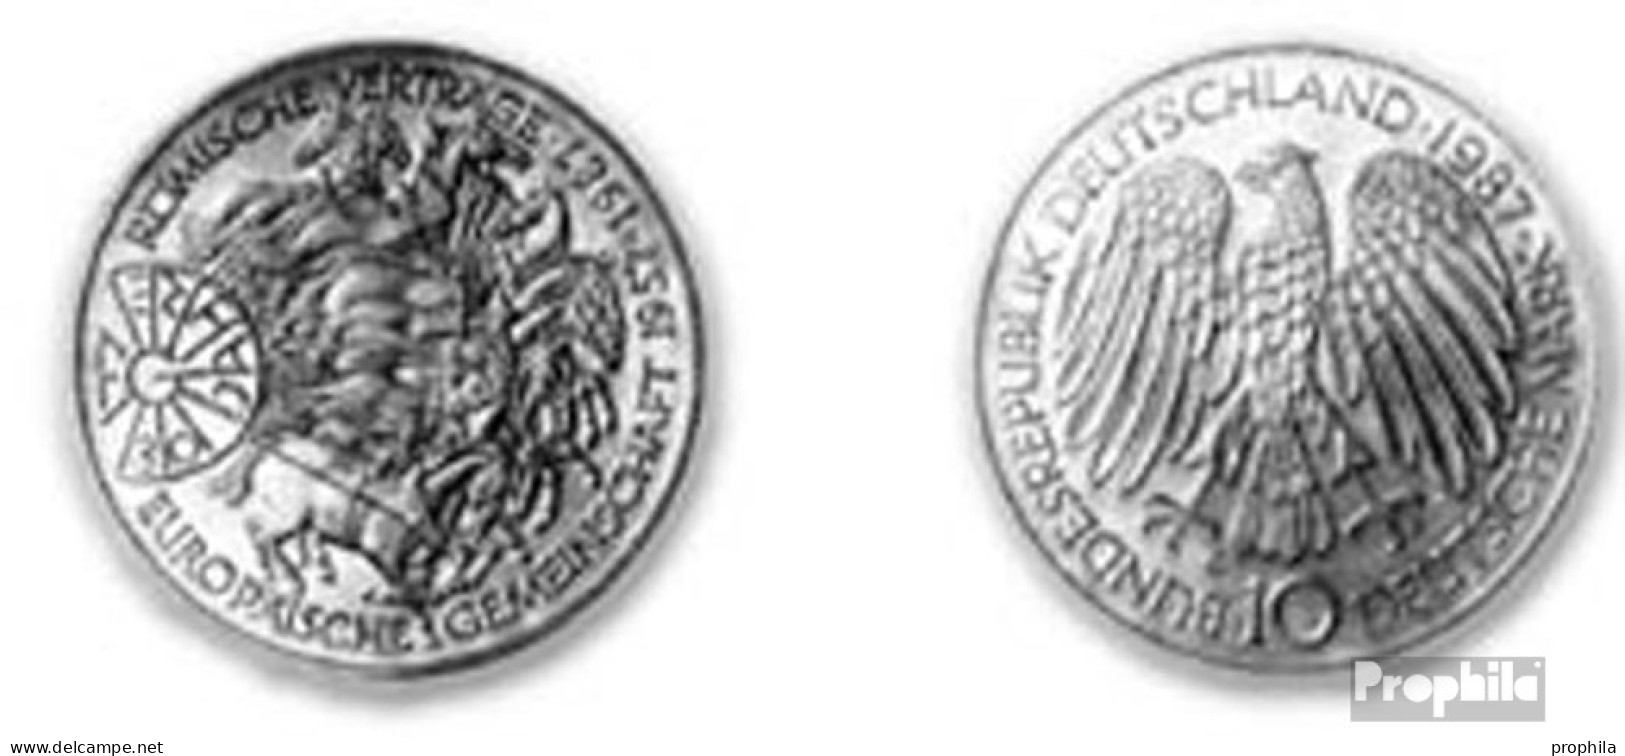 BRD (BR.Deutschland) Jägernr: 442 1987 G Stgl./unzirkuliert Silber Stgl./unzirkuliert 1987 10 DM Römische Verträge - Gedenkmünzen